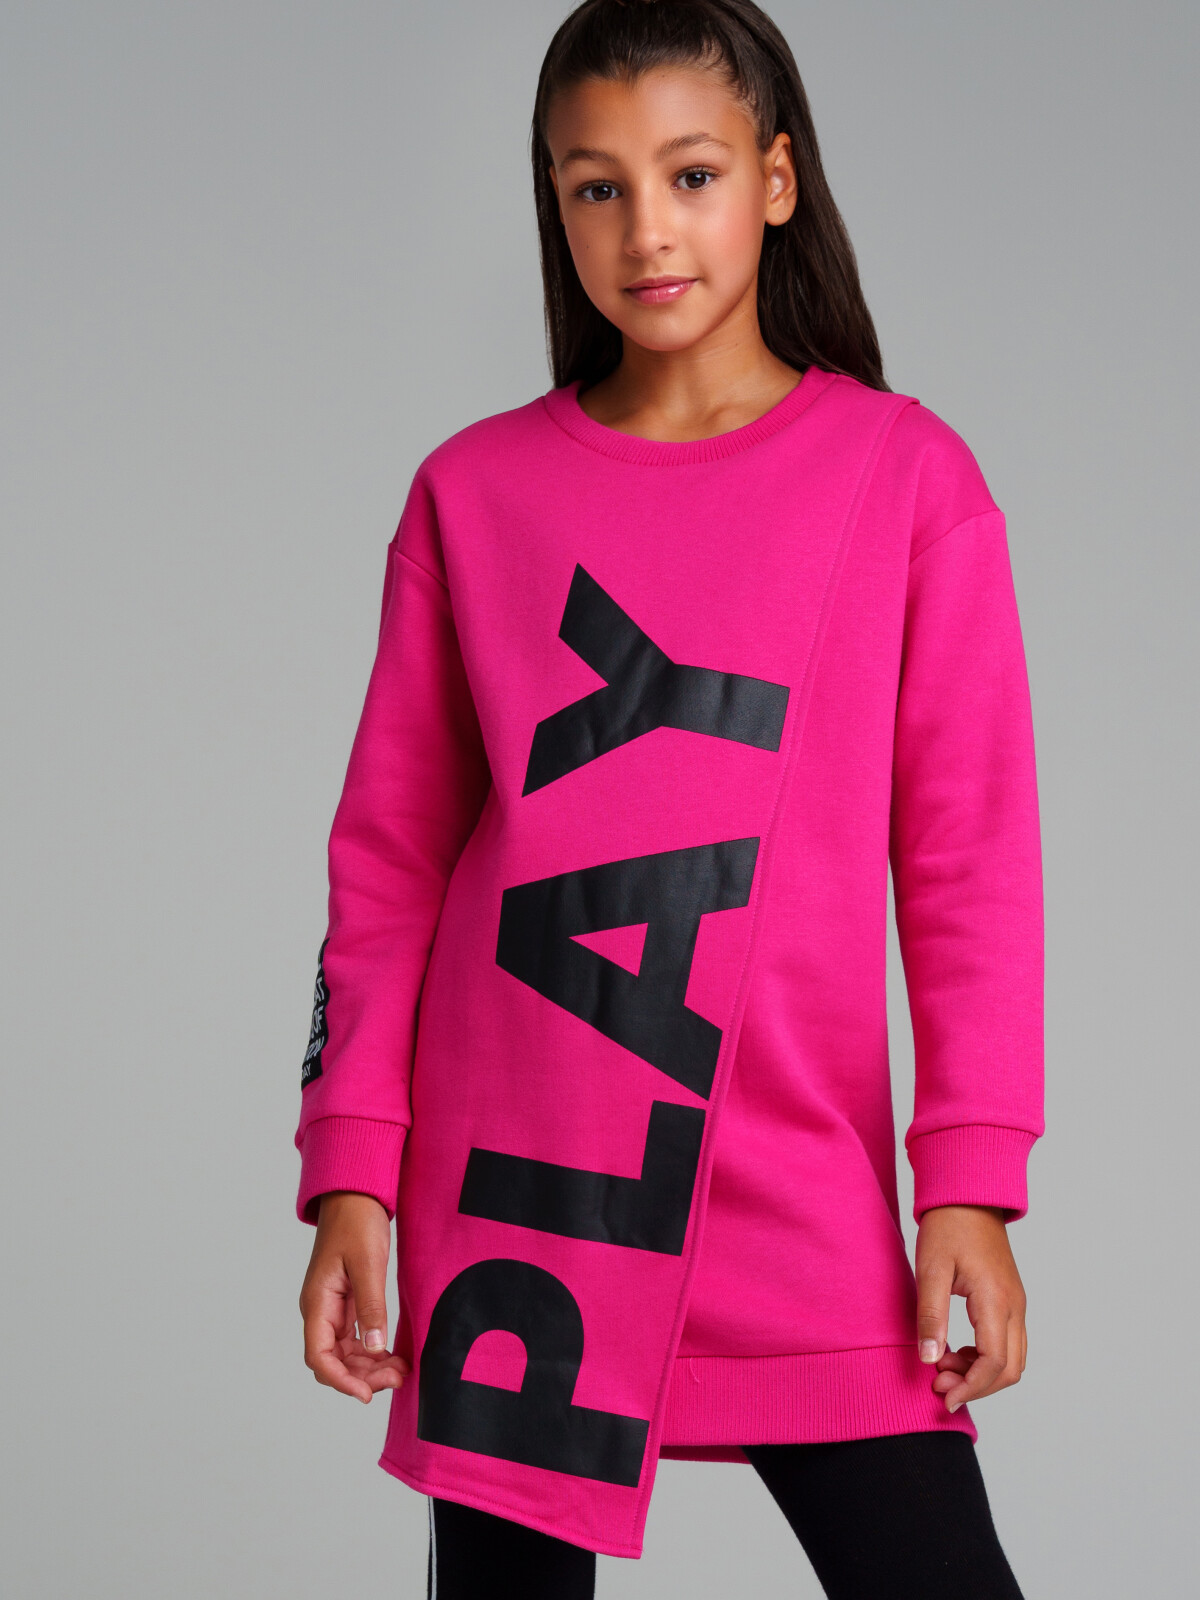 Платье трикотажное для девочек PlayToday, фуксия,черный, 158 полотенце playtoday tween 12341049 фуксия разно ный 130 80